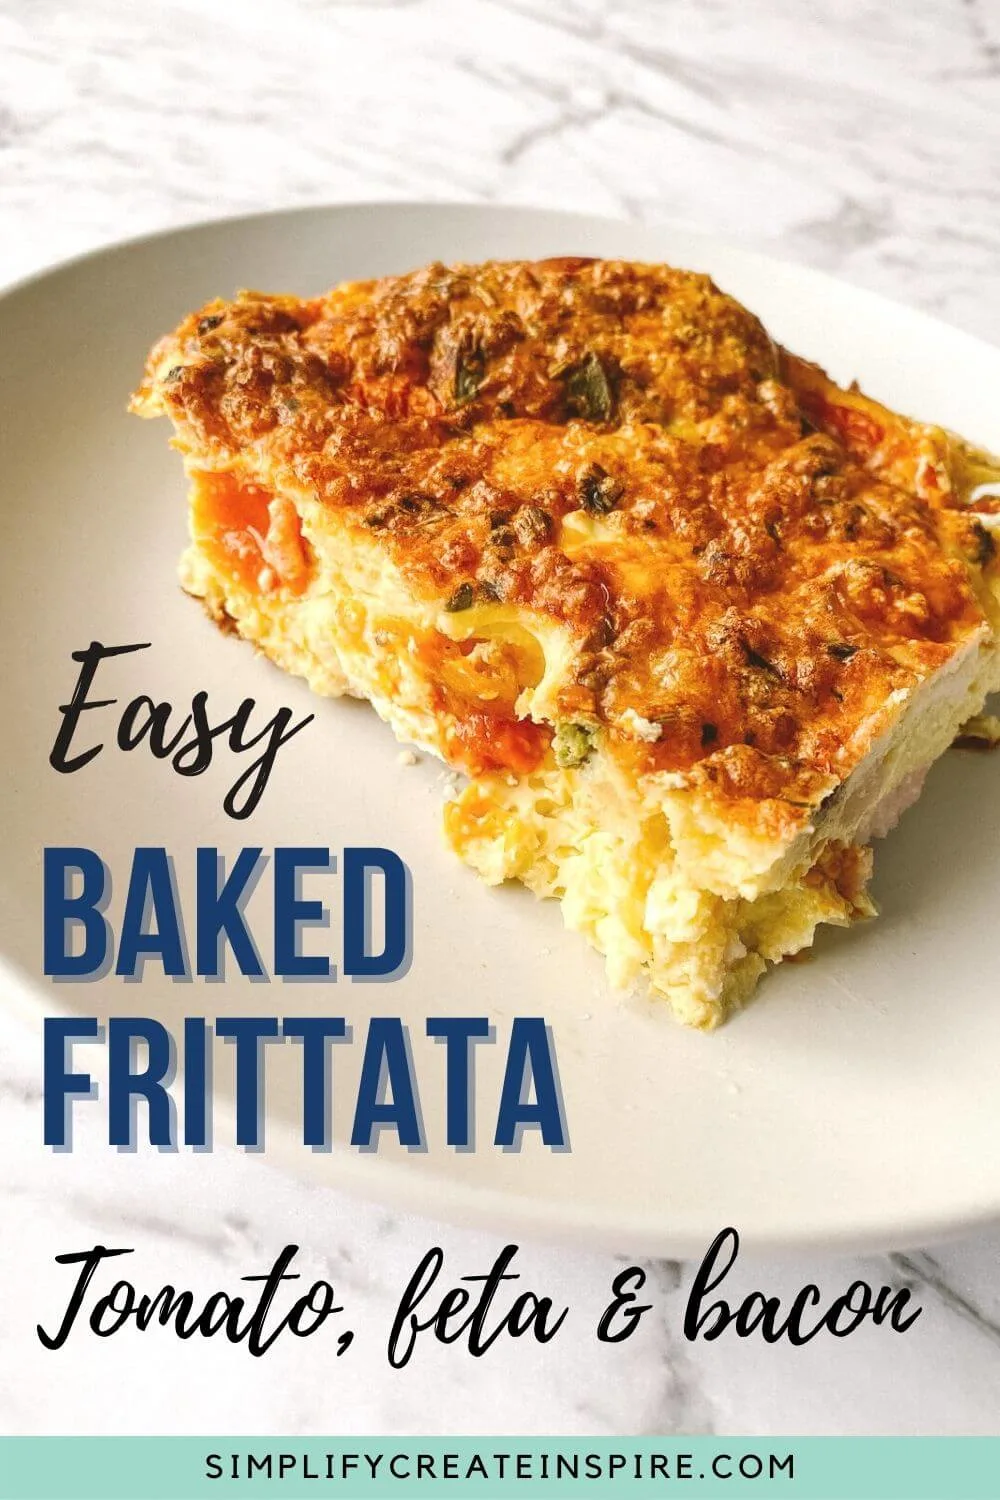 Easy baked frittata recipe